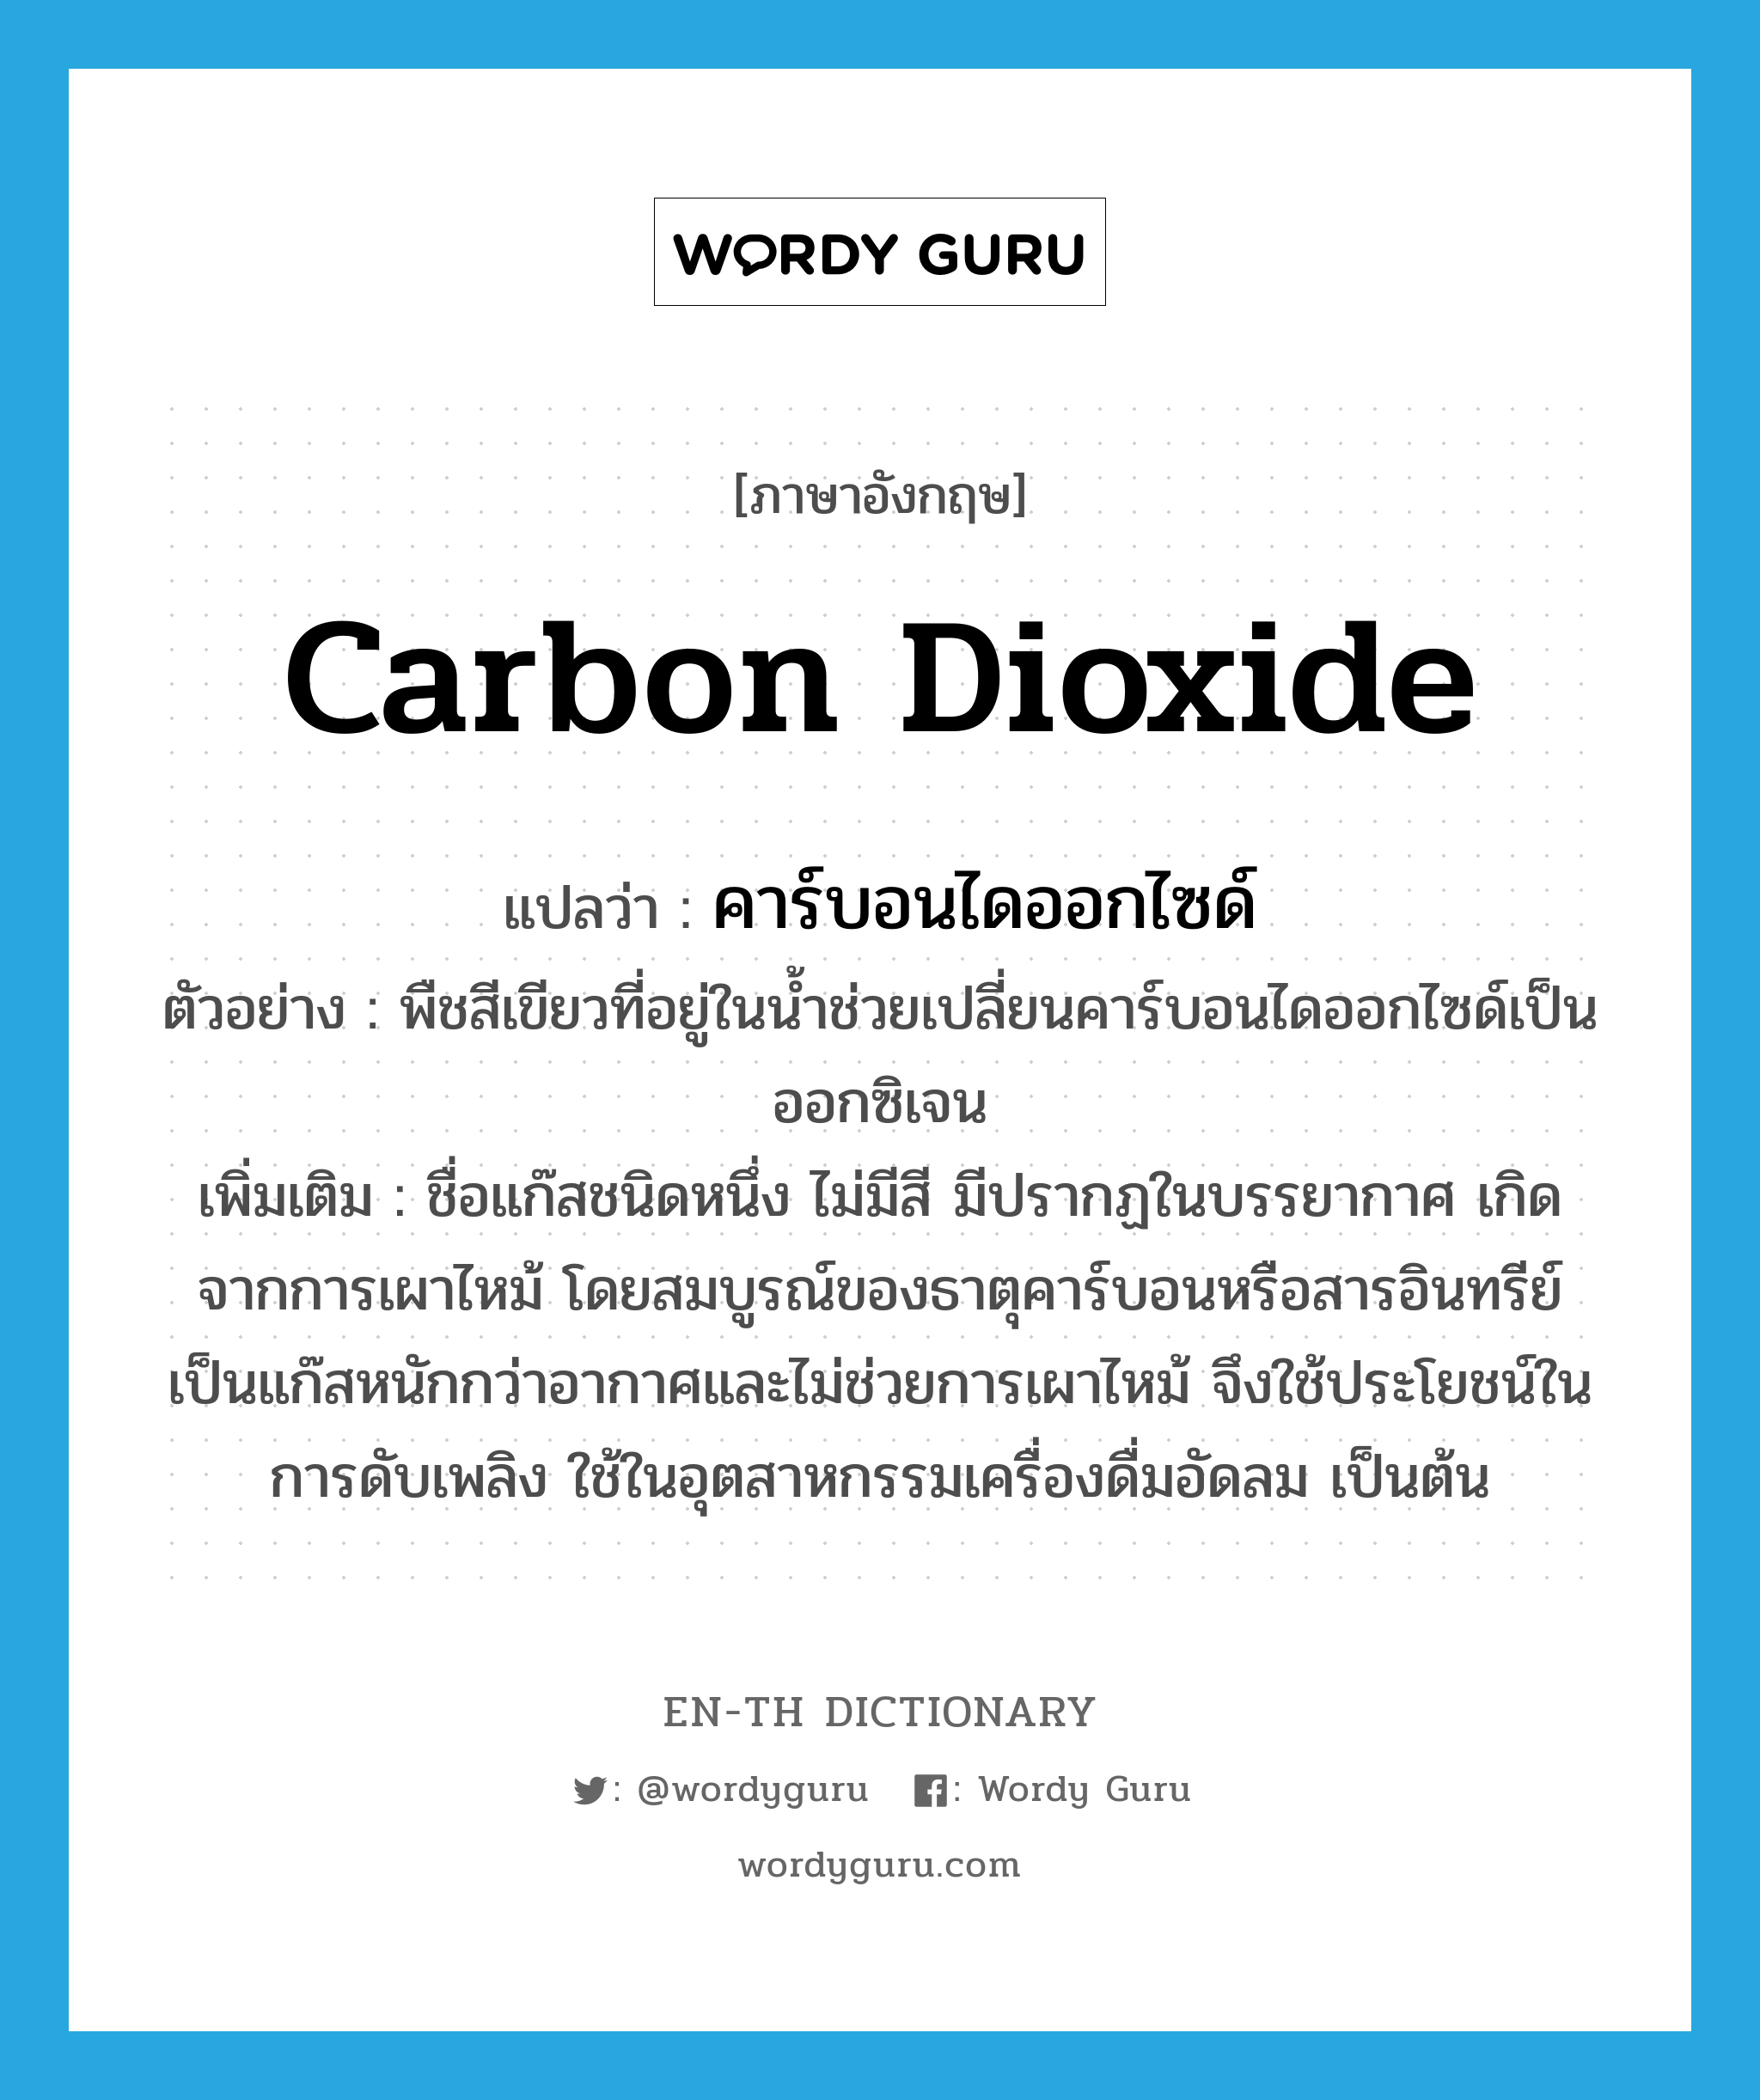 คาร์บอนไดออกไซด์ ภาษาอังกฤษ?, คำศัพท์ภาษาอังกฤษ คาร์บอนไดออกไซด์ แปลว่า carbon dioxide ประเภท N ตัวอย่าง พืชสีเขียวที่อยู่ในน้ำช่วยเปลี่ยนคาร์บอนไดออกไซด์เป็นออกซิเจน เพิ่มเติม ชื่อแก๊สชนิดหนึ่ง ไม่มีสี มีปรากฏในบรรยากาศ เกิดจากการเผาไหม้ โดยสมบูรณ์ของธาตุคาร์บอนหรือสารอินทรีย์ เป็นแก๊สหนักกว่าอากาศและไม่ช่วยการเผาไหม้ จึงใช้ประโยชน์ในการดับเพลิง ใช้ในอุตสาหกรรมเครื่องดื่มอัดลม เป็นต้น หมวด N